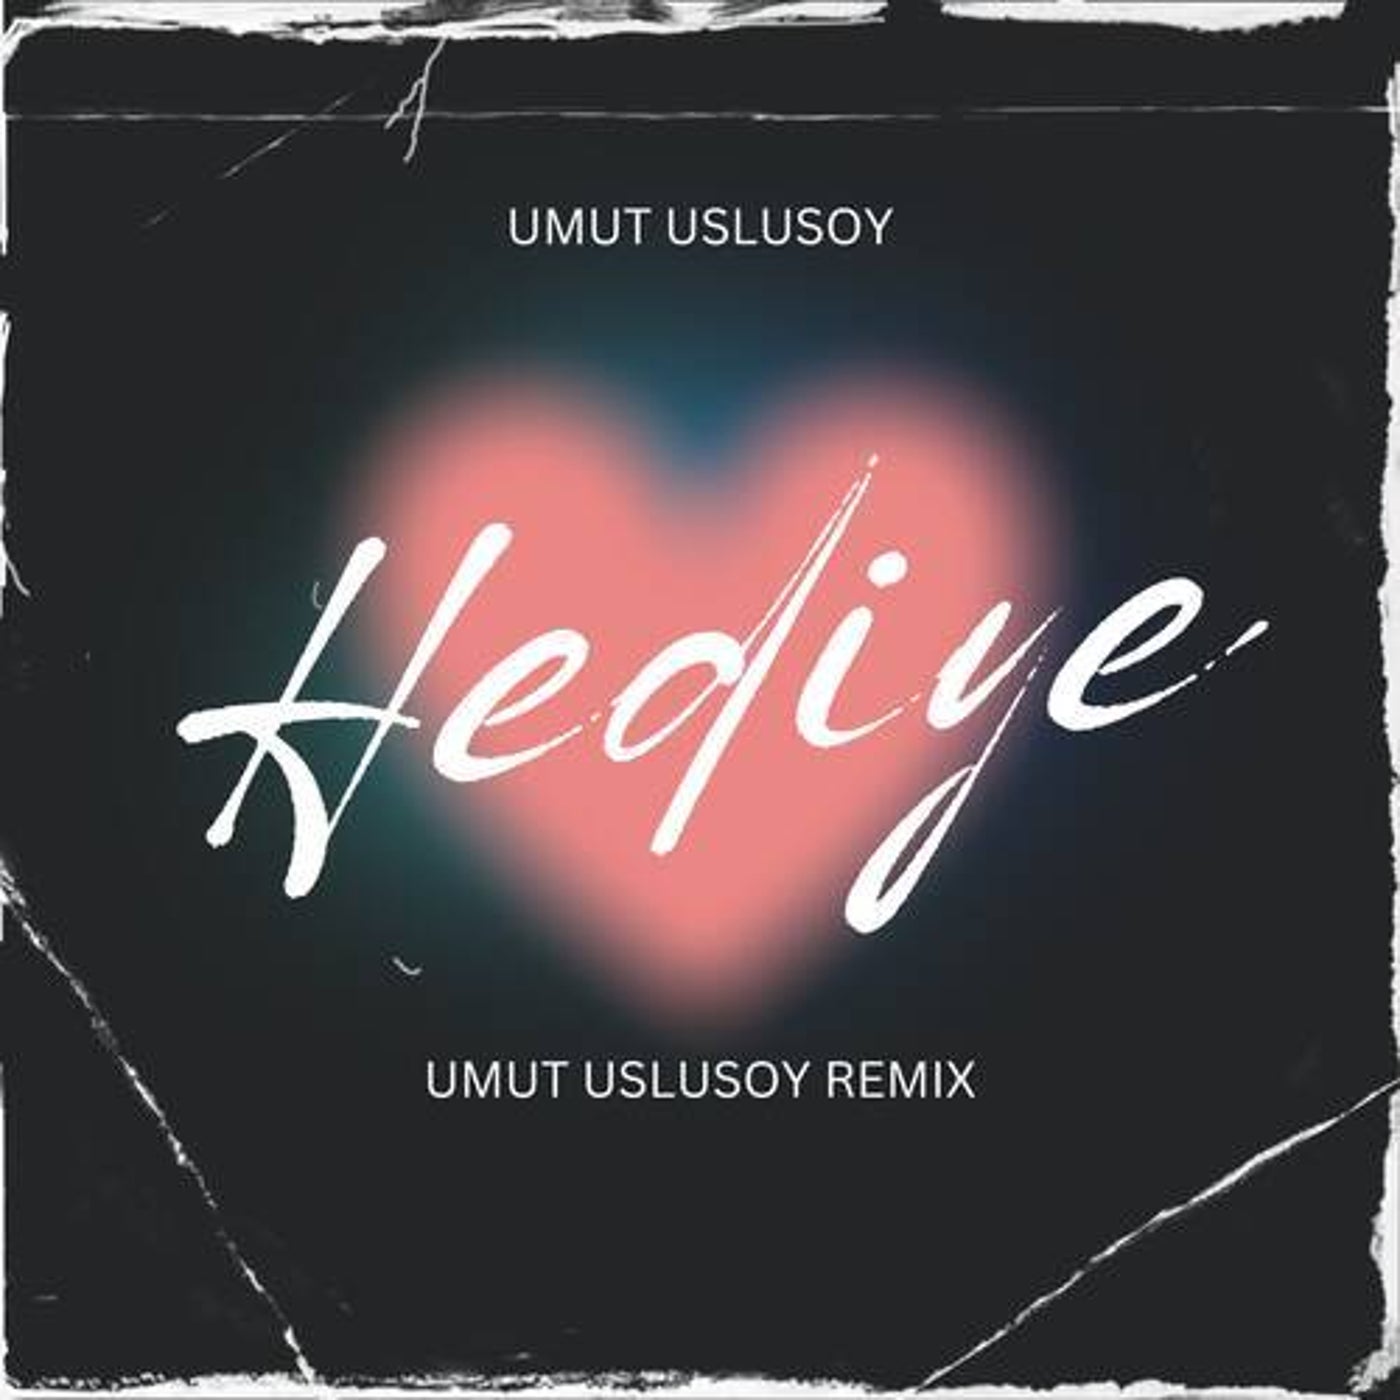 Hediye (Umut Uslusoy Remix)